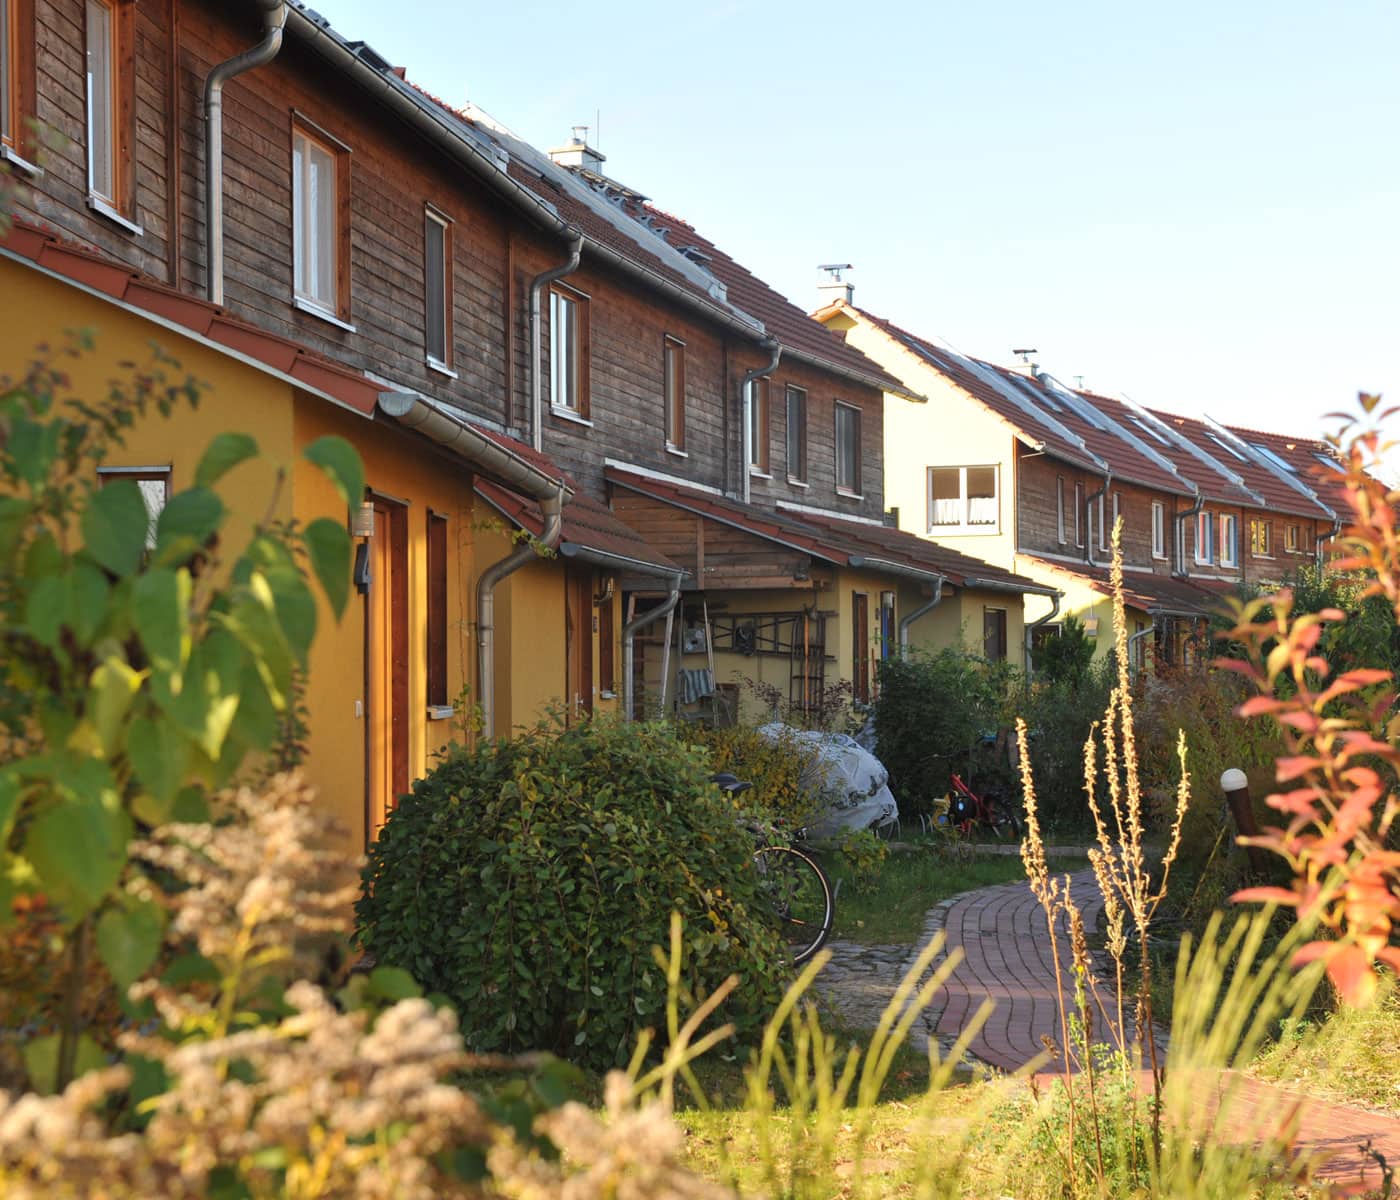 Statt Einfamilienhaus gemeinschaftlich wohnen mit Cohousing Berlin // HIMBEER